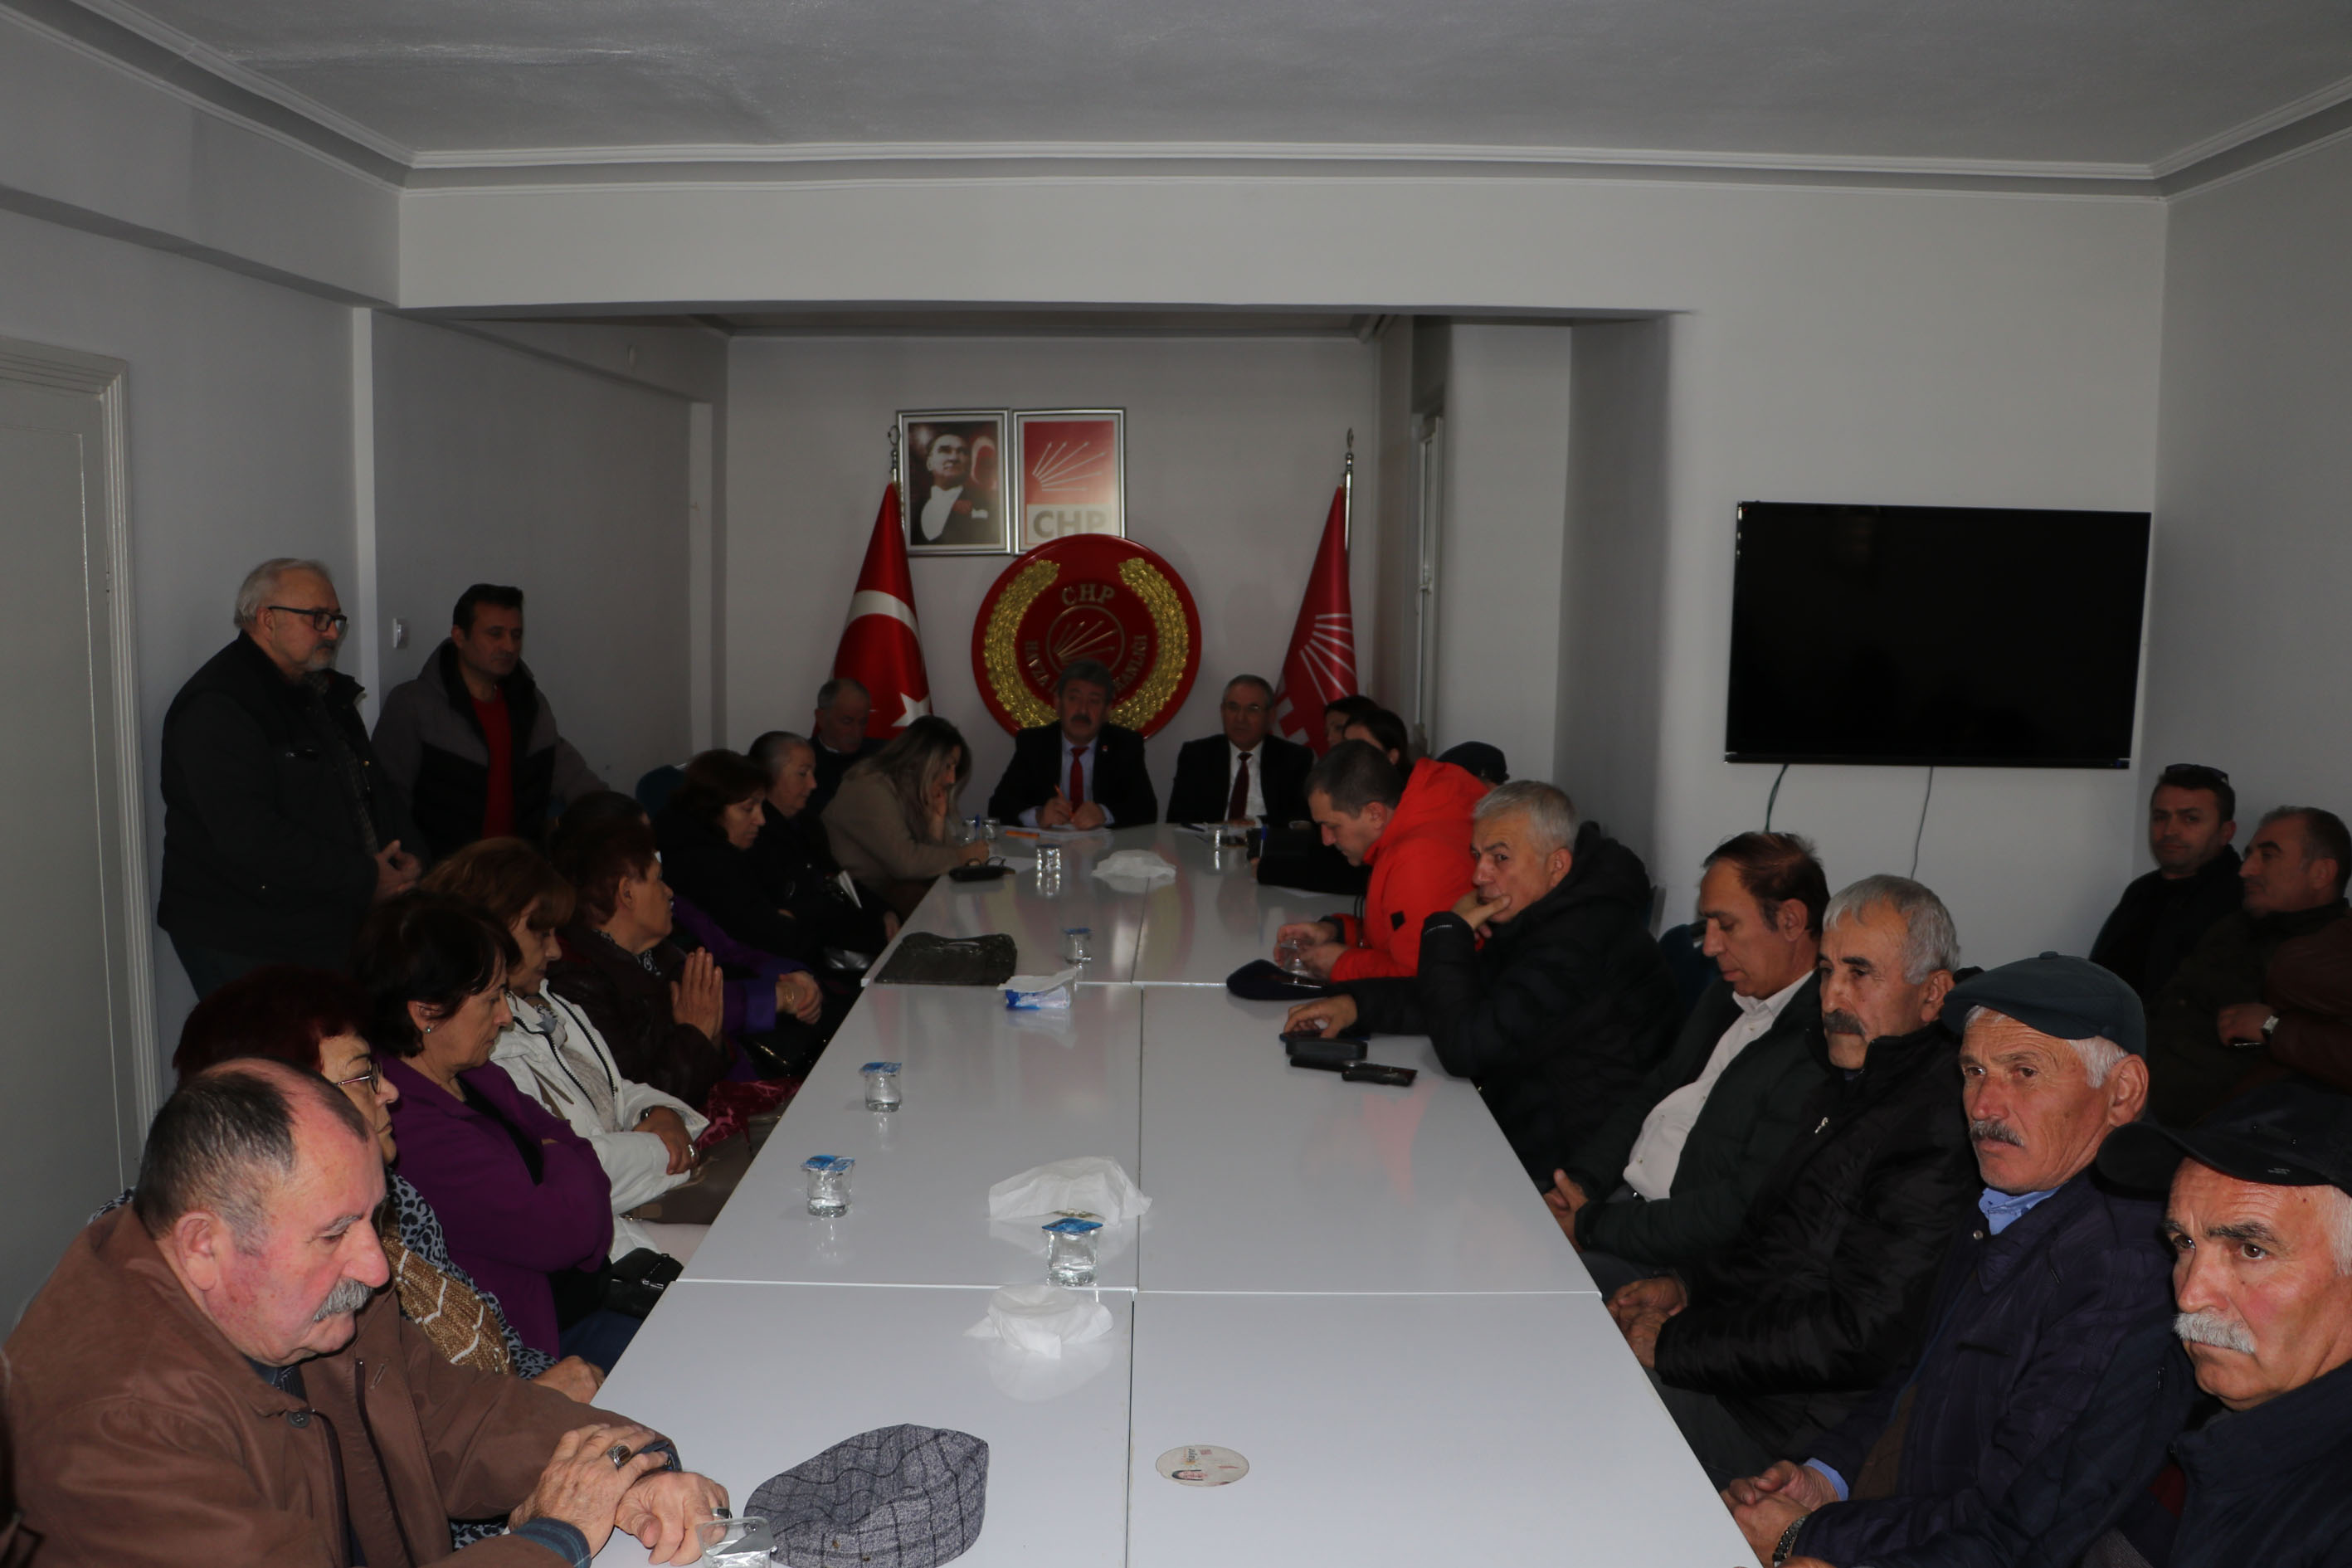 CHP Havza İlçe Danışma Kurulu toplandı